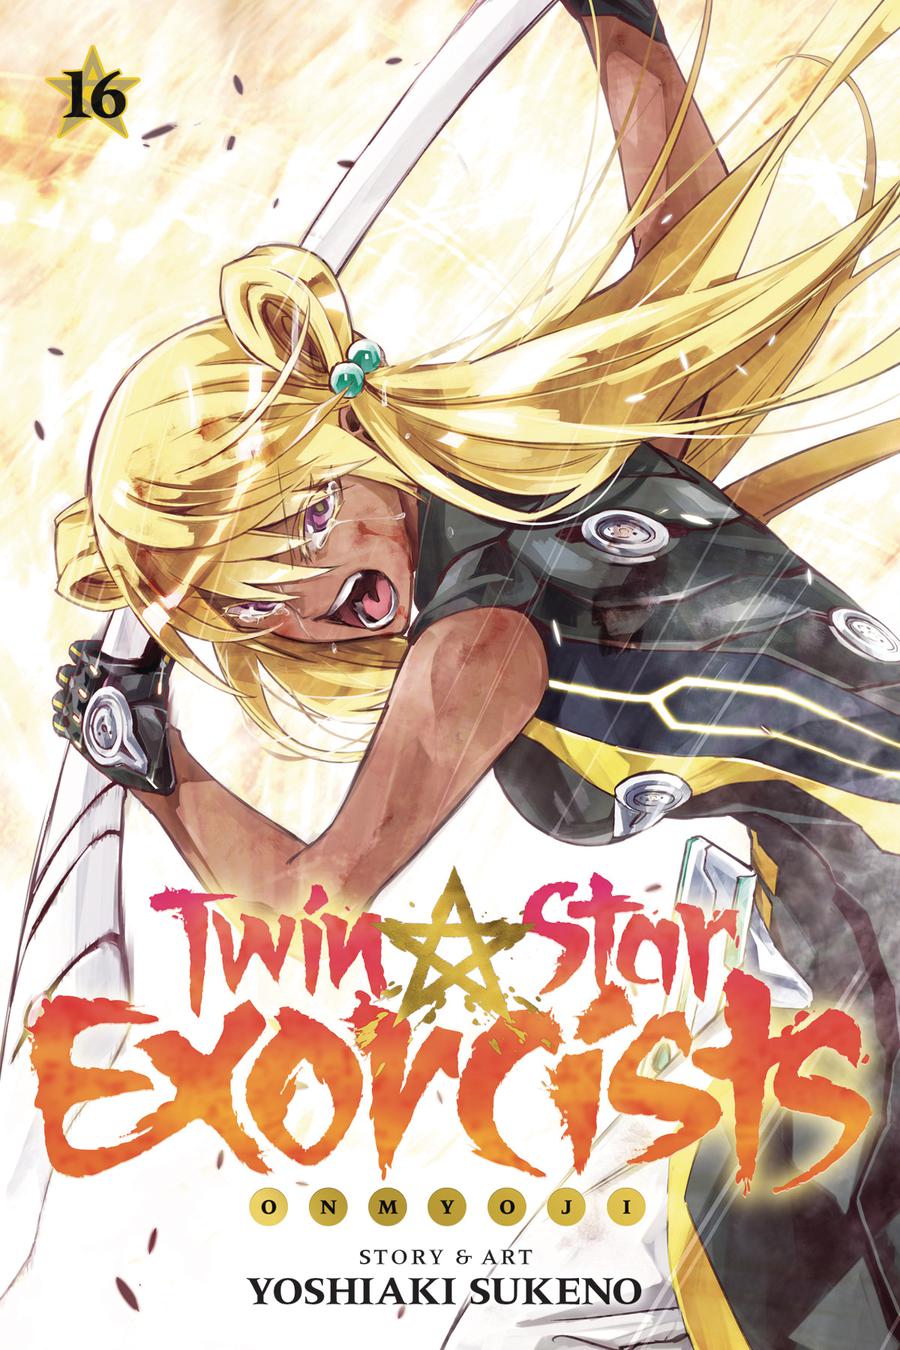 Twin Star Exorcists Onmyoji Vol 16 TP